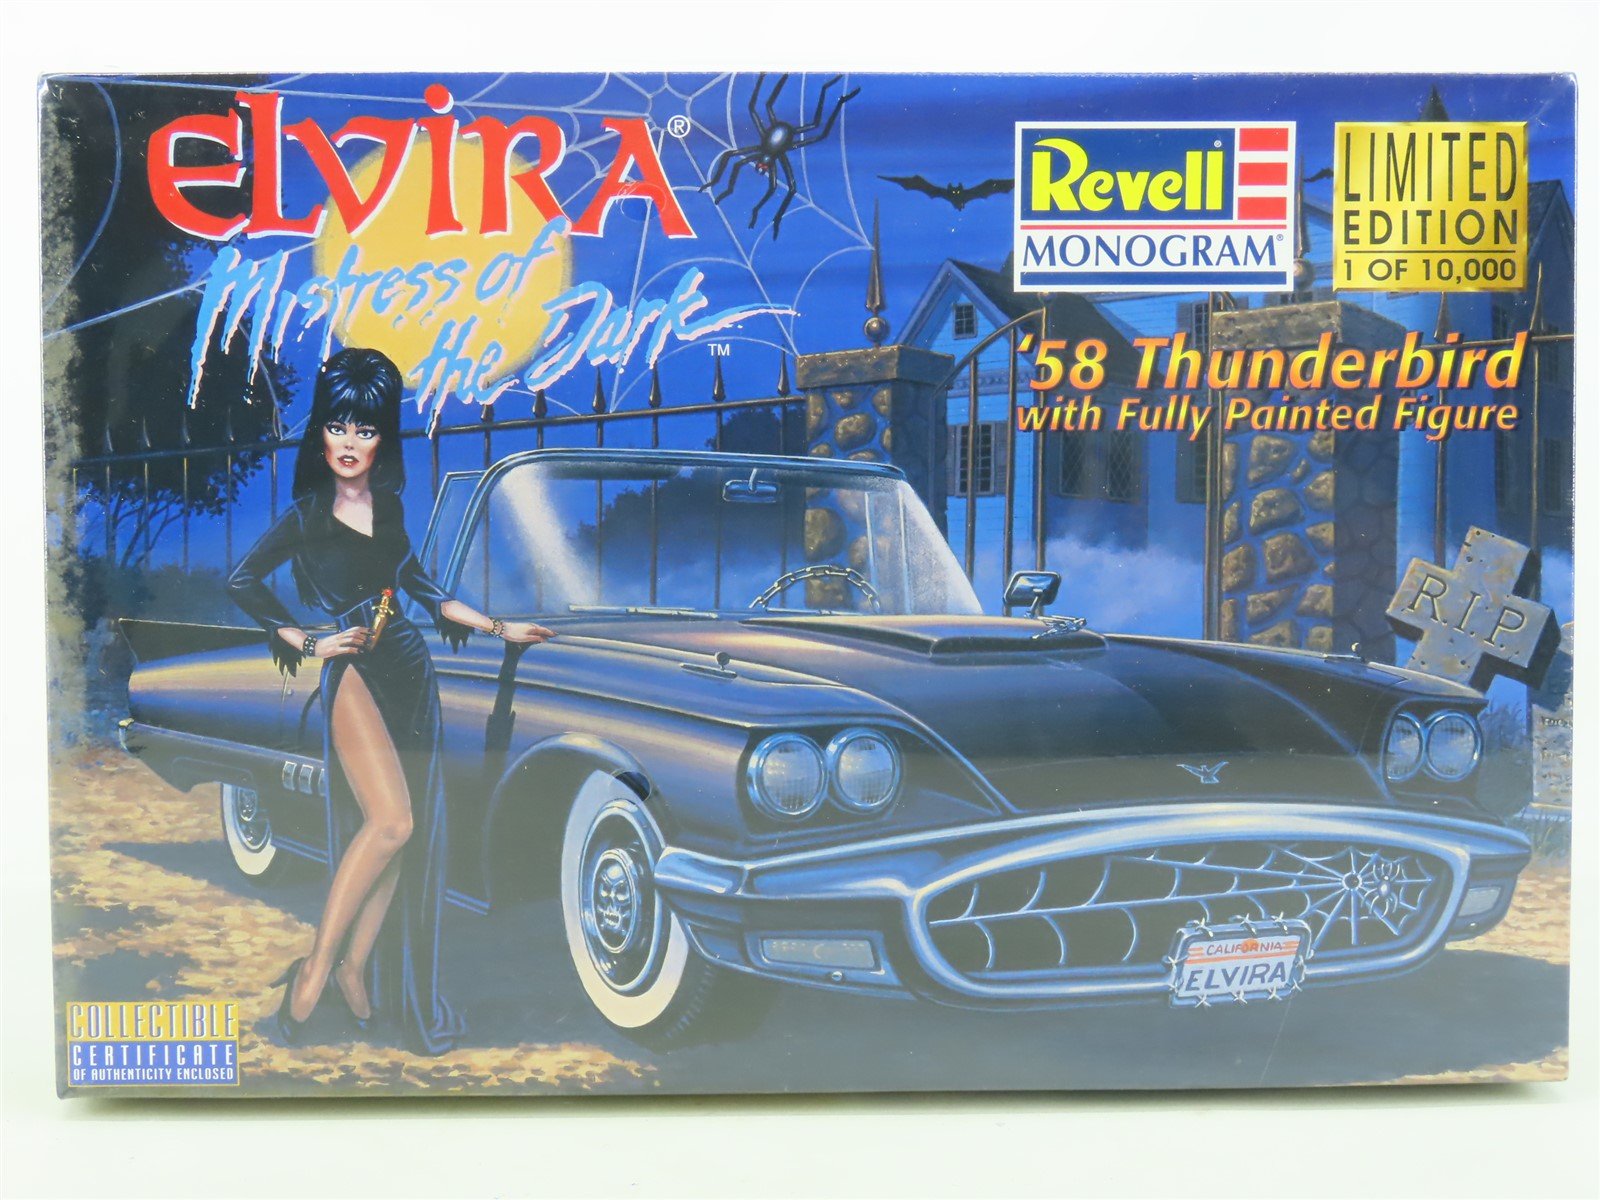 1:24 Revell Monogram Model Car Kit #85-2542 Elvira '58 Thunderbird - SEALED